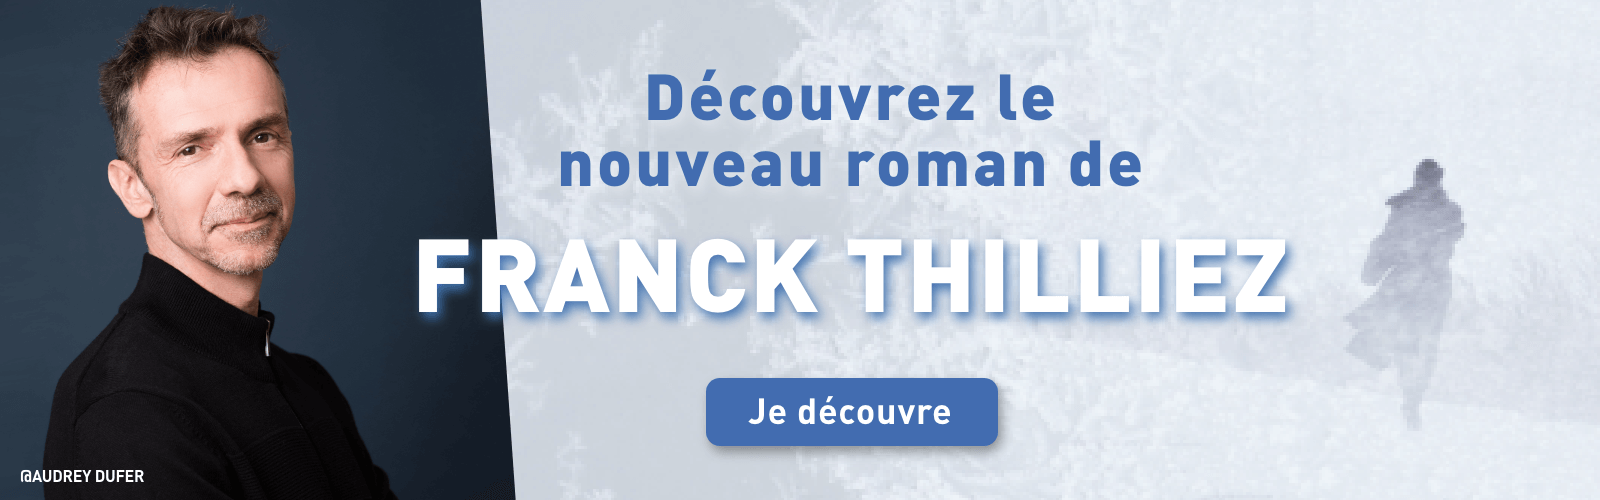 Découvrez le nouveau livre de Franck Thilliez